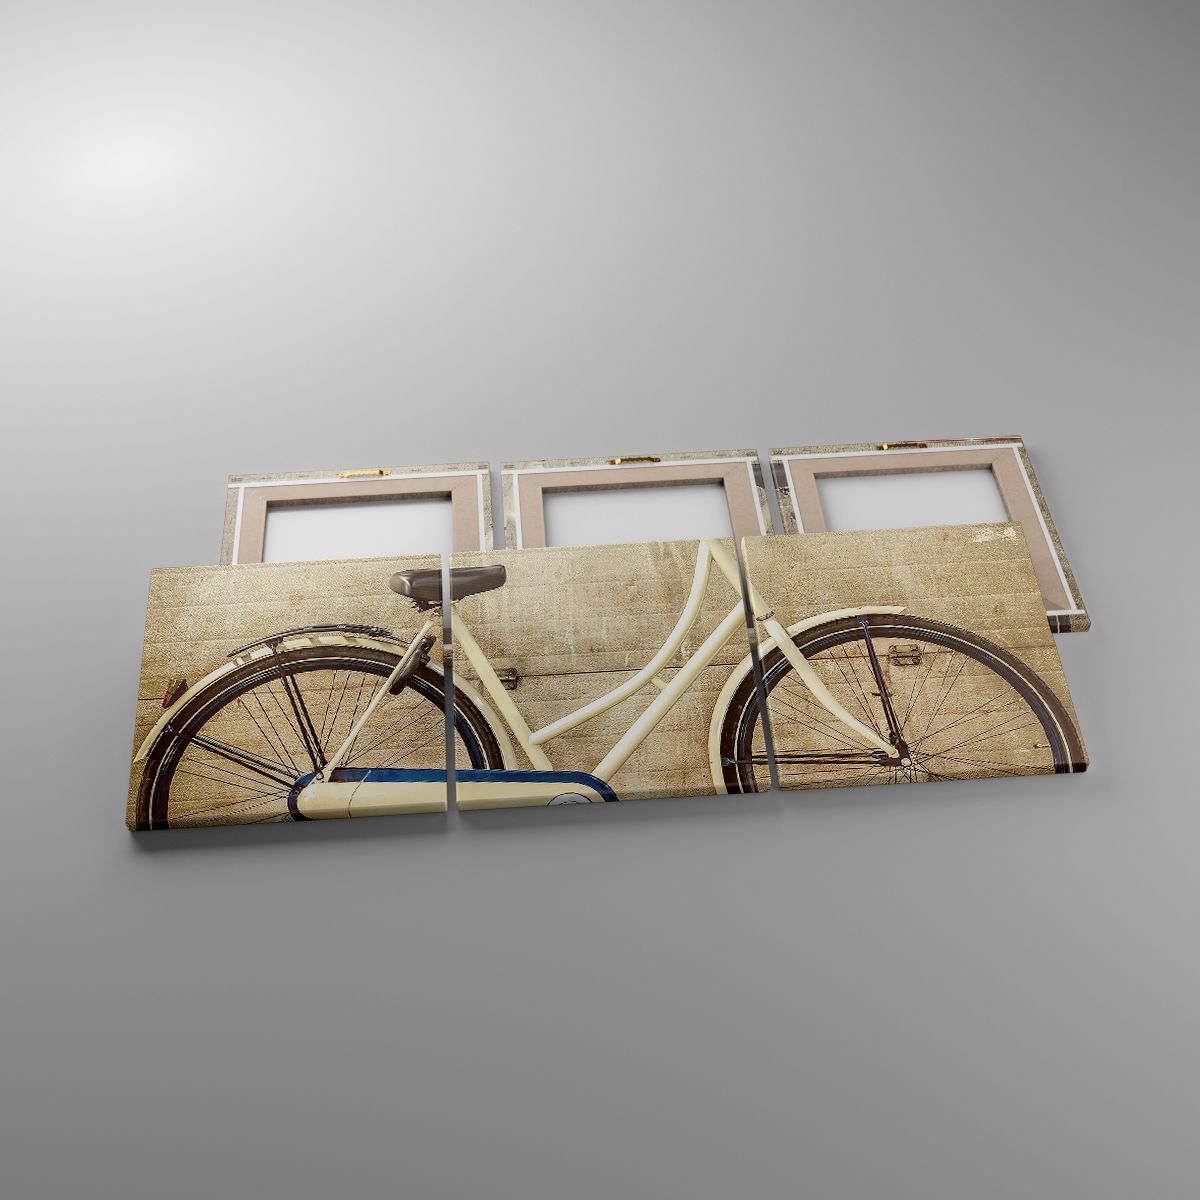 Leinwandbild Wandgemälde, Leinwandbild Fahrrad, Leinwandbild Platten, Leinwandbild Jahrgang, Leinwandbild Kunst